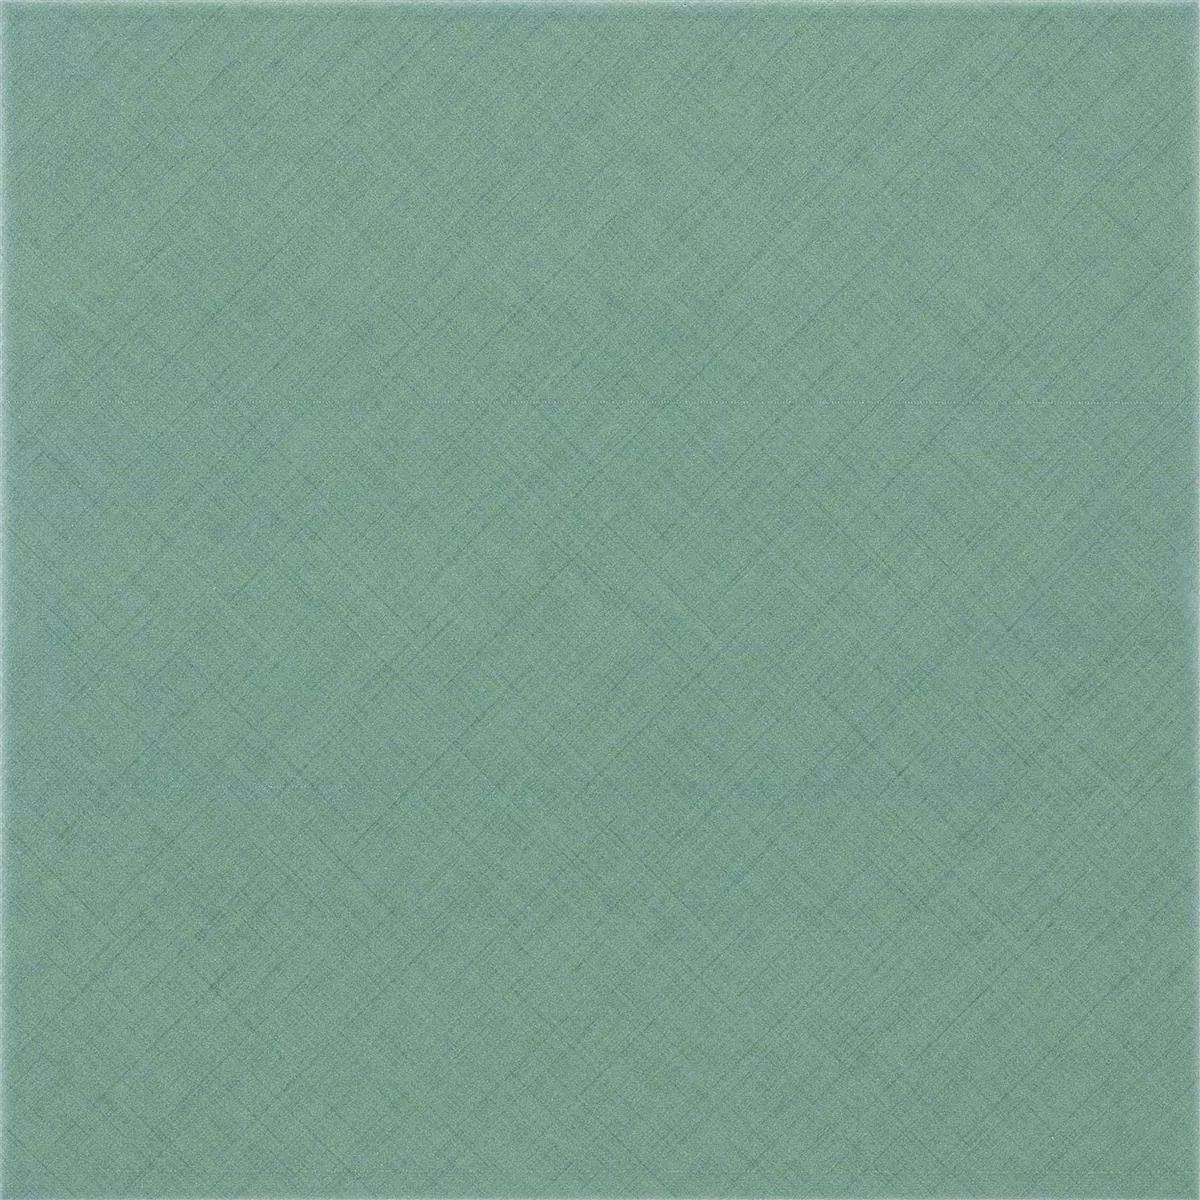 Πλακάκια Δαπέδου Εμφάνιση Tσιμέντου Wildflower Πράσινος Πλακάκι Bάσης 18,5x18,5cm 